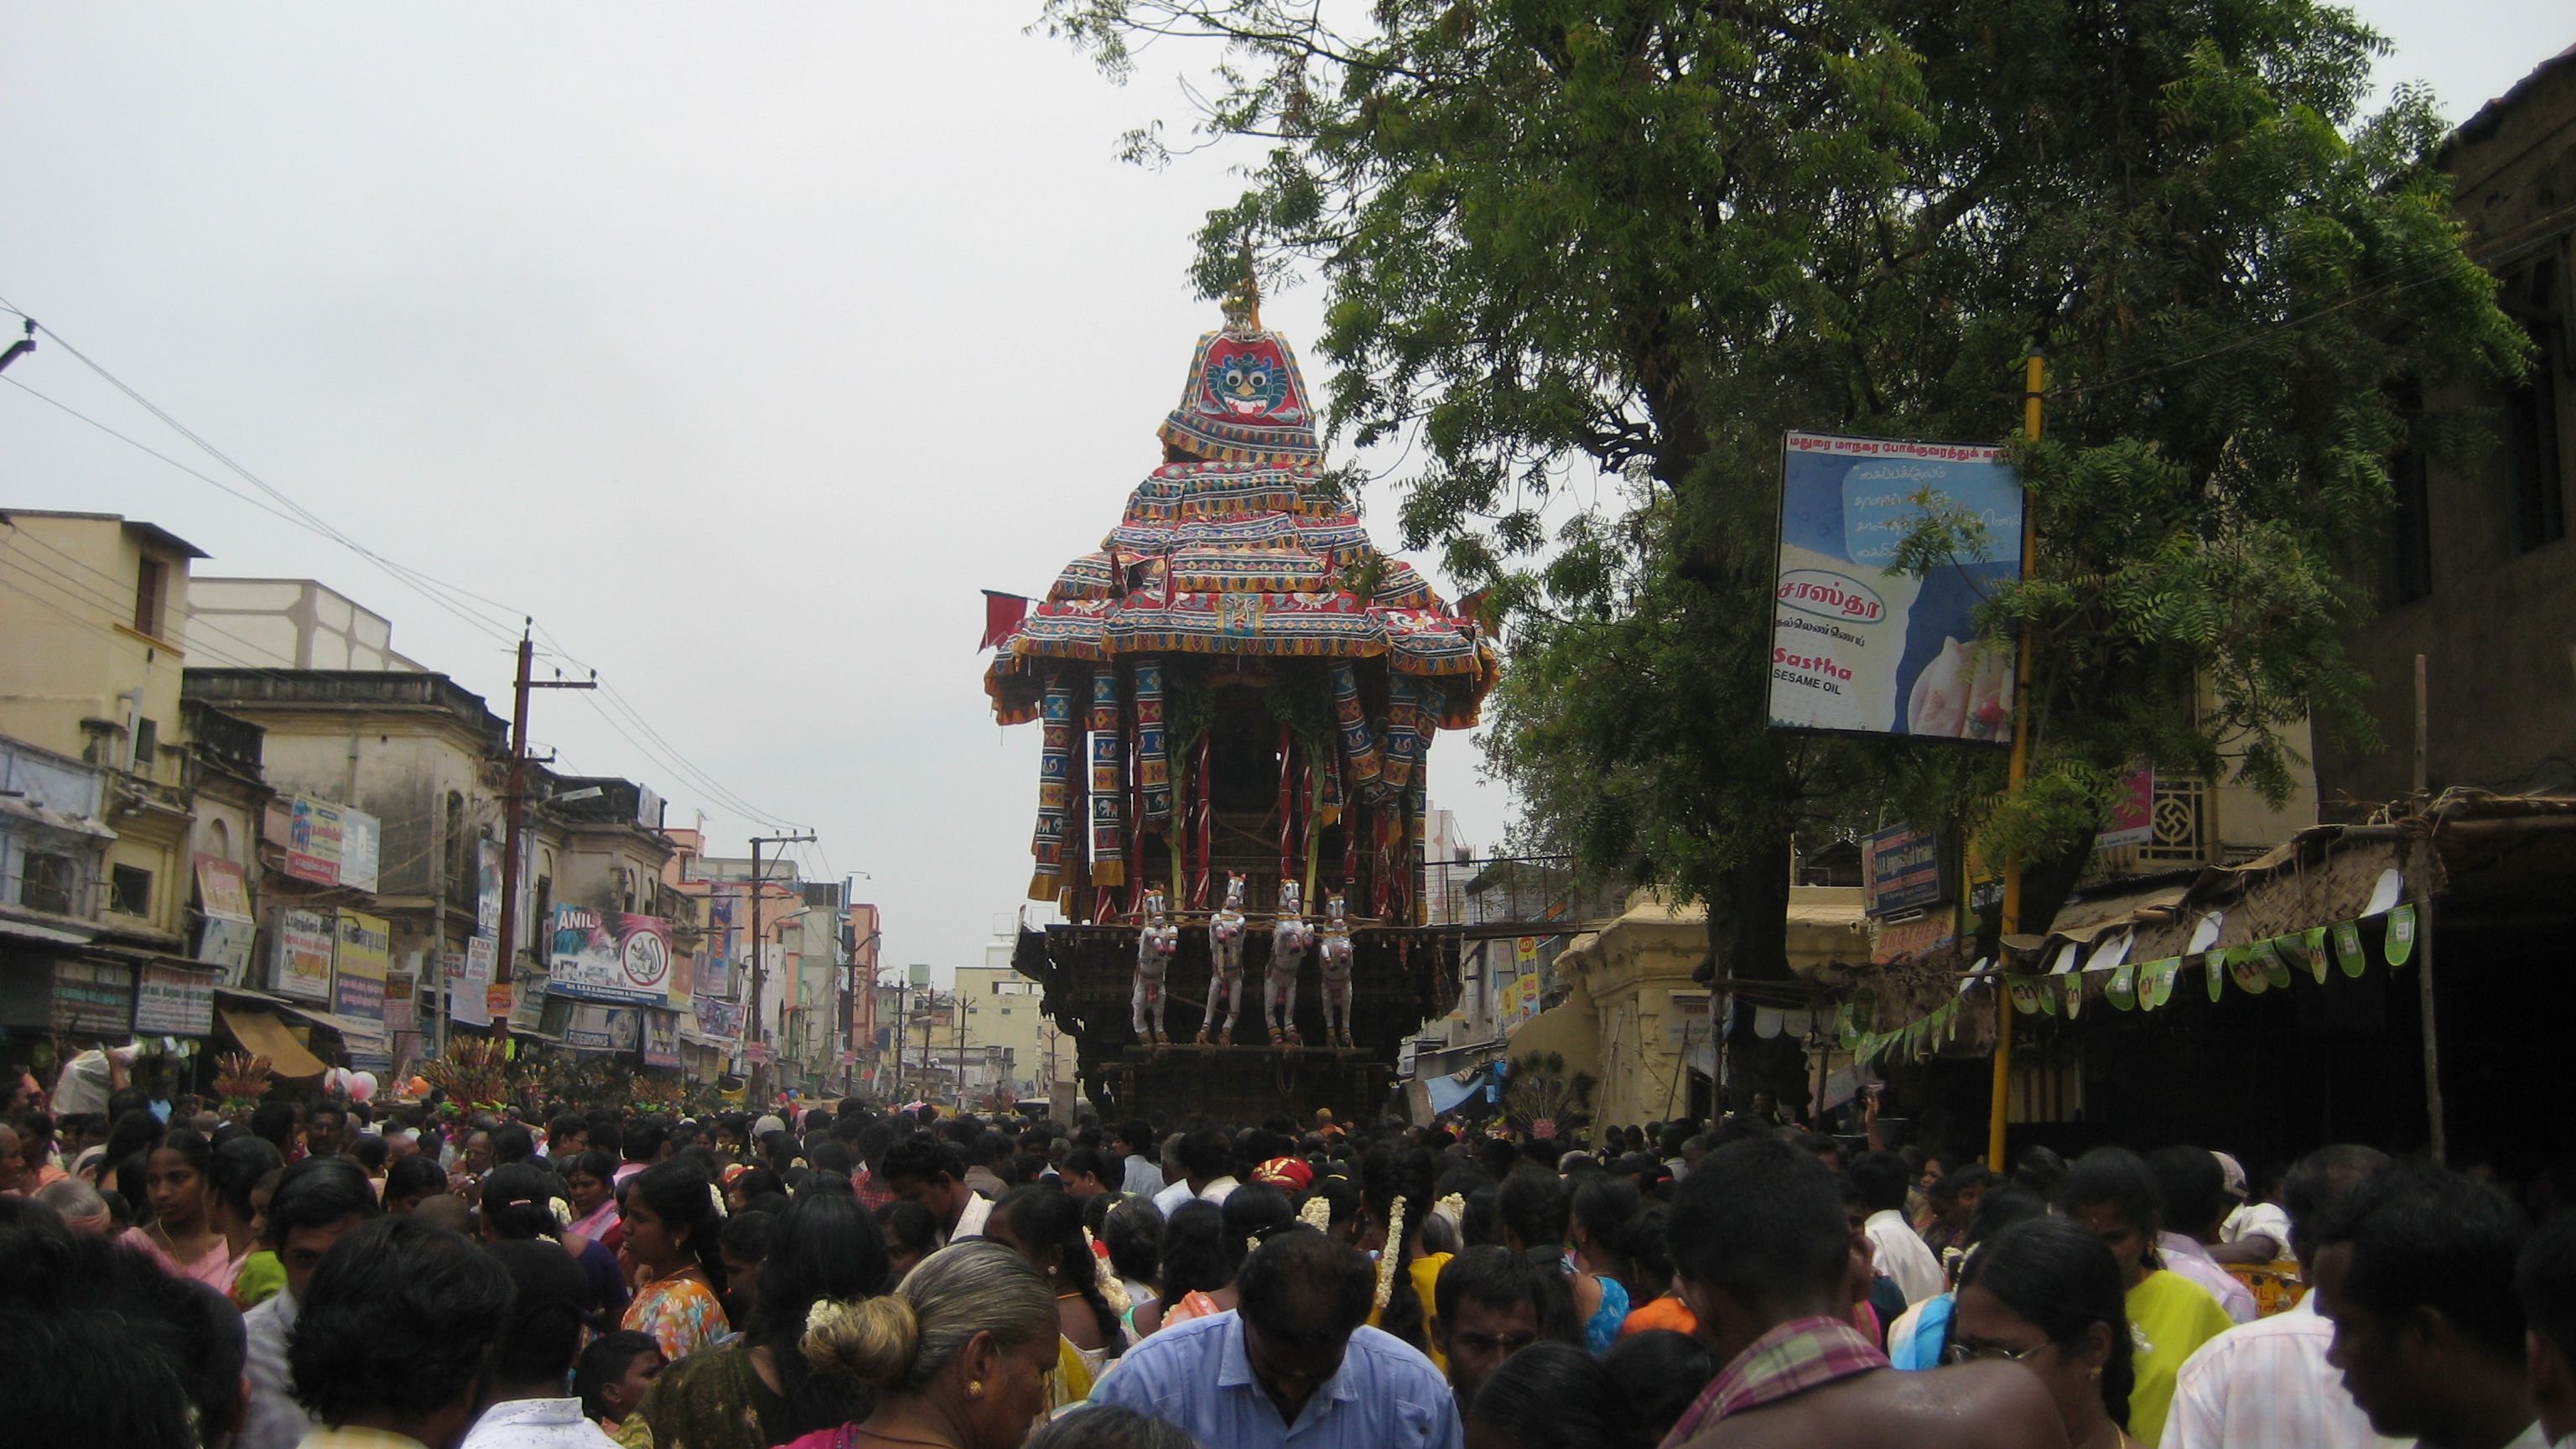 Chithirai festival